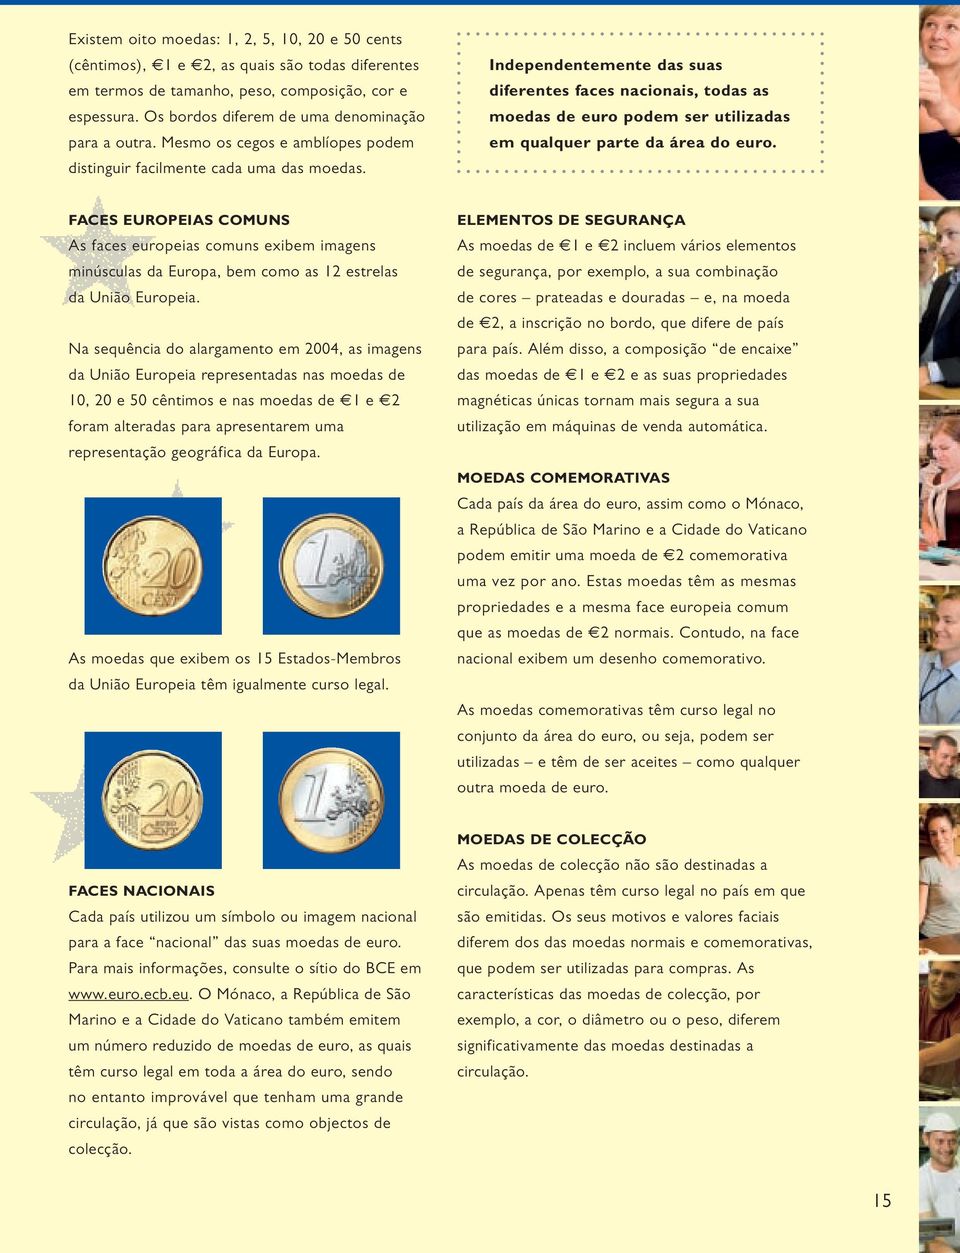 Independentemente das suas diferentes faces nacionais, todas as moedas de euro podem ser utilizadas em qualquer parte da área do euro.